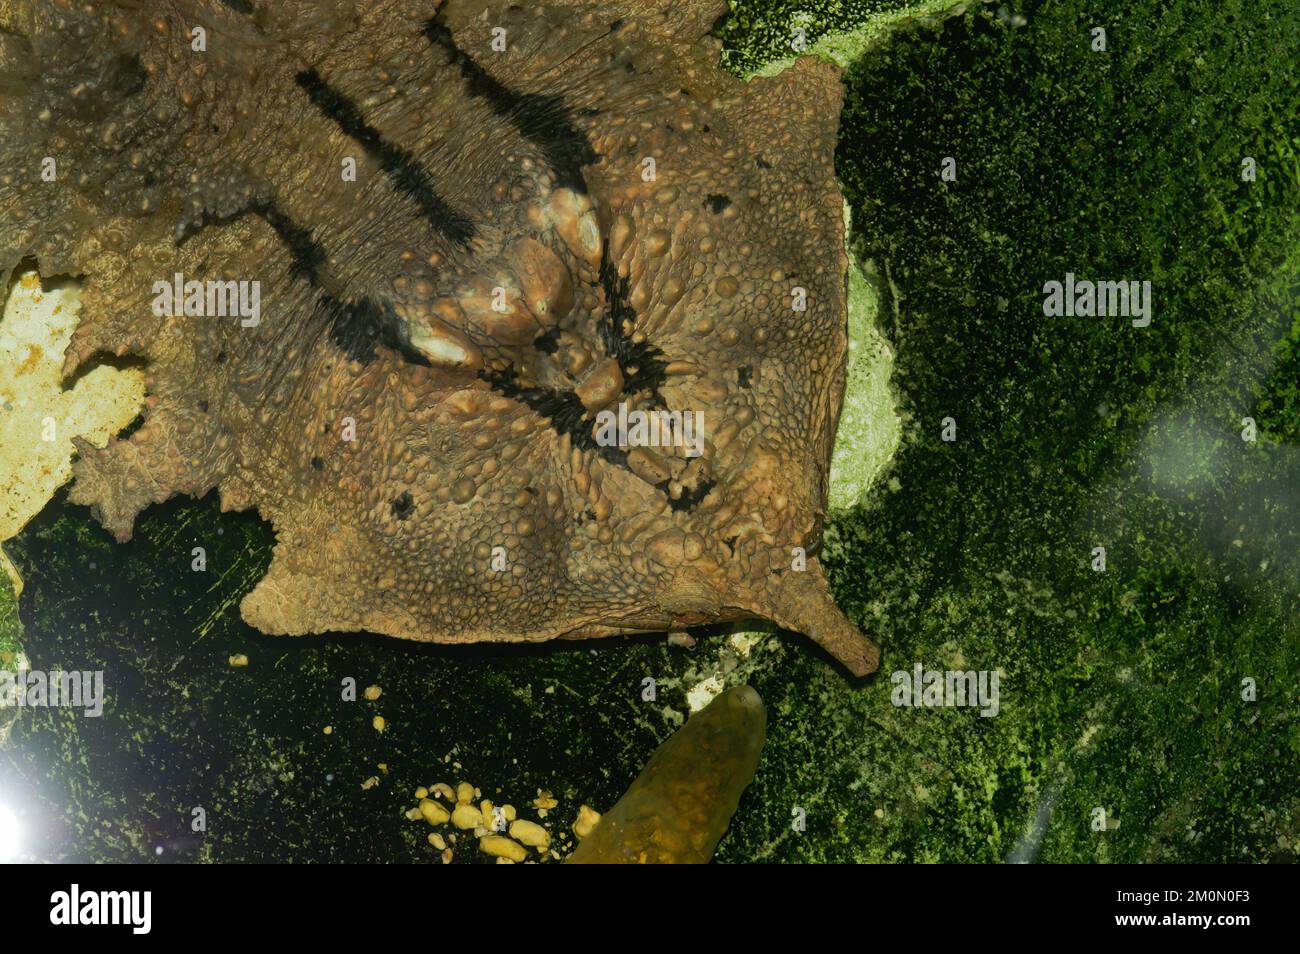 Il Matamata (Chelus fimbriata) in acqua Foto Stock